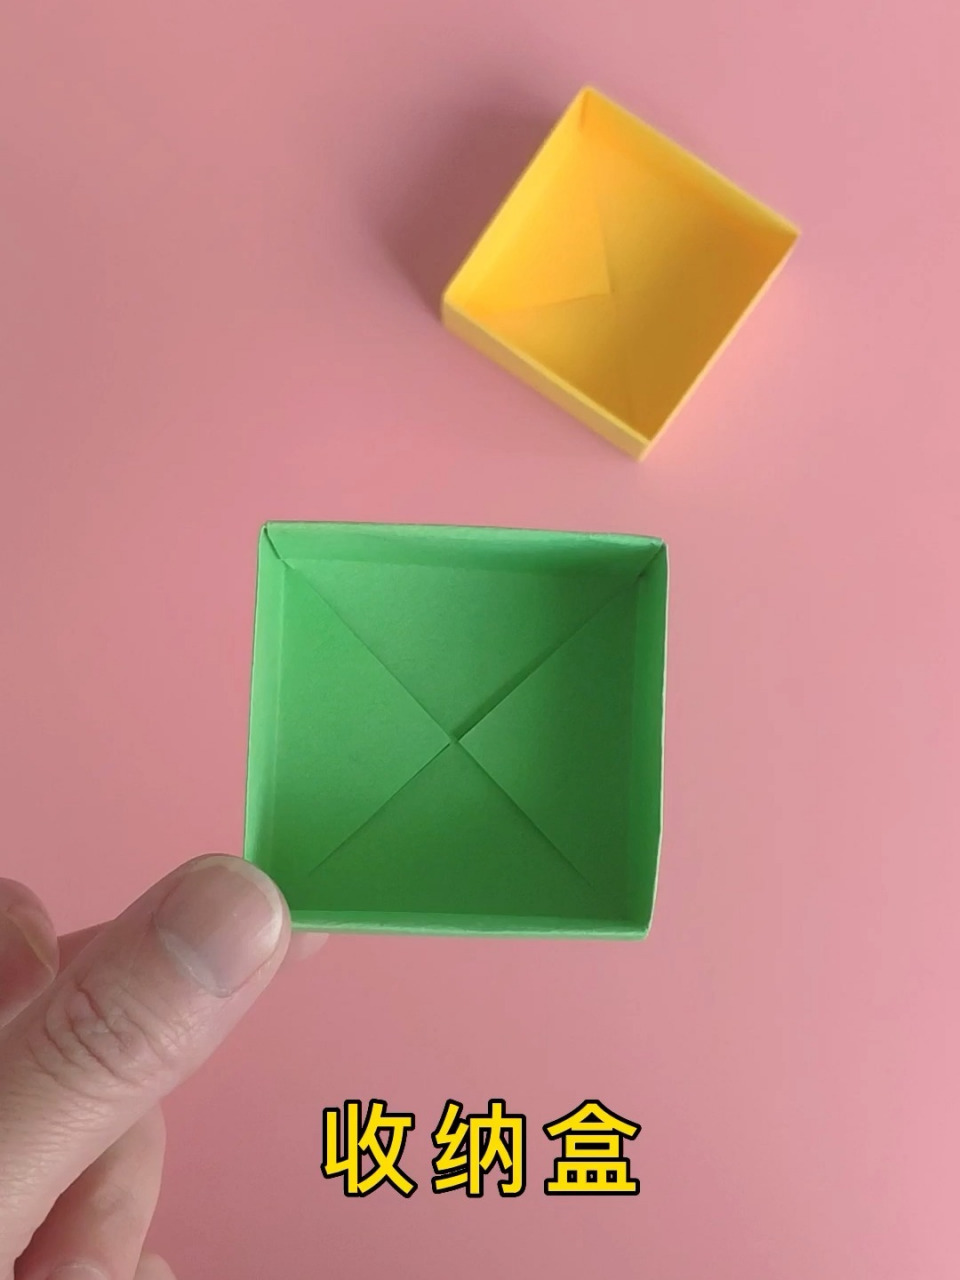 正方形盒子折叠方法图片